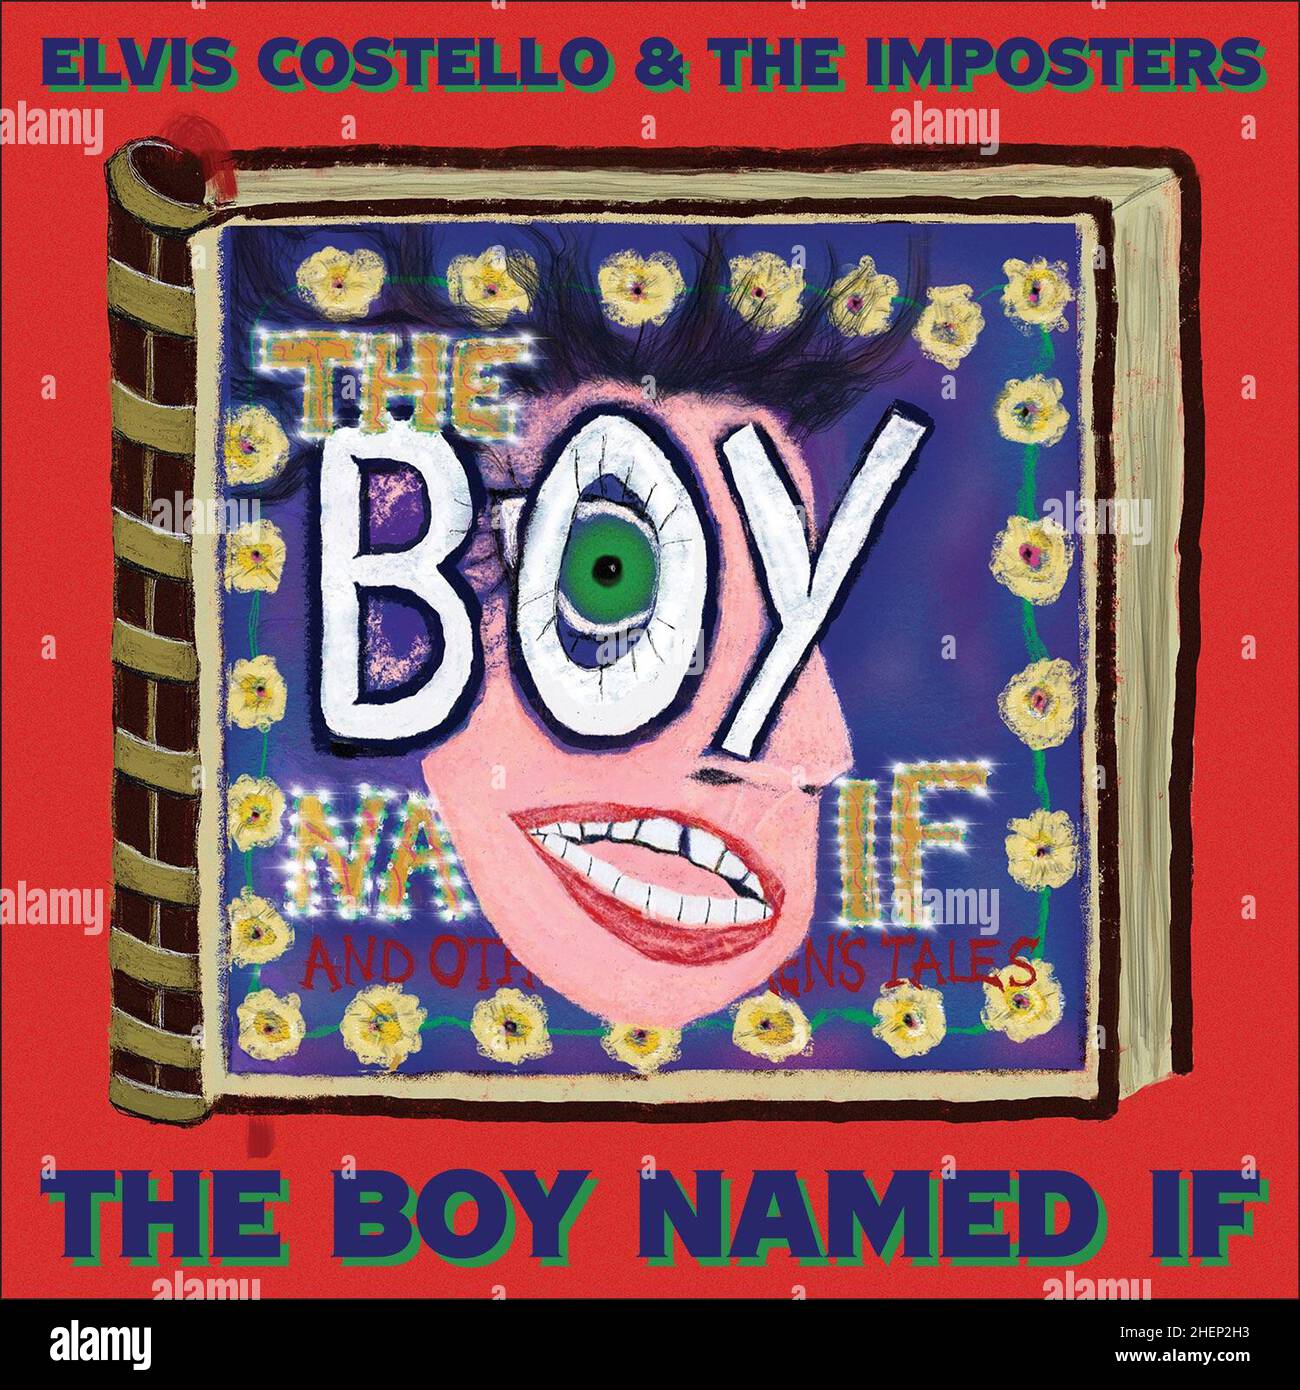 Foto di Elvis Costello e l'album degli Imposter The Boy named If. Vedi PA feature SHOWBIZ Music Reviews. Il credito dell'immagine dovrebbe essere: EMI. ATTENZIONE: Questa immagine deve essere utilizzata solo per accompagnare le recensioni musicali DELLA funzione PA SHOWBIZ. Foto Stock